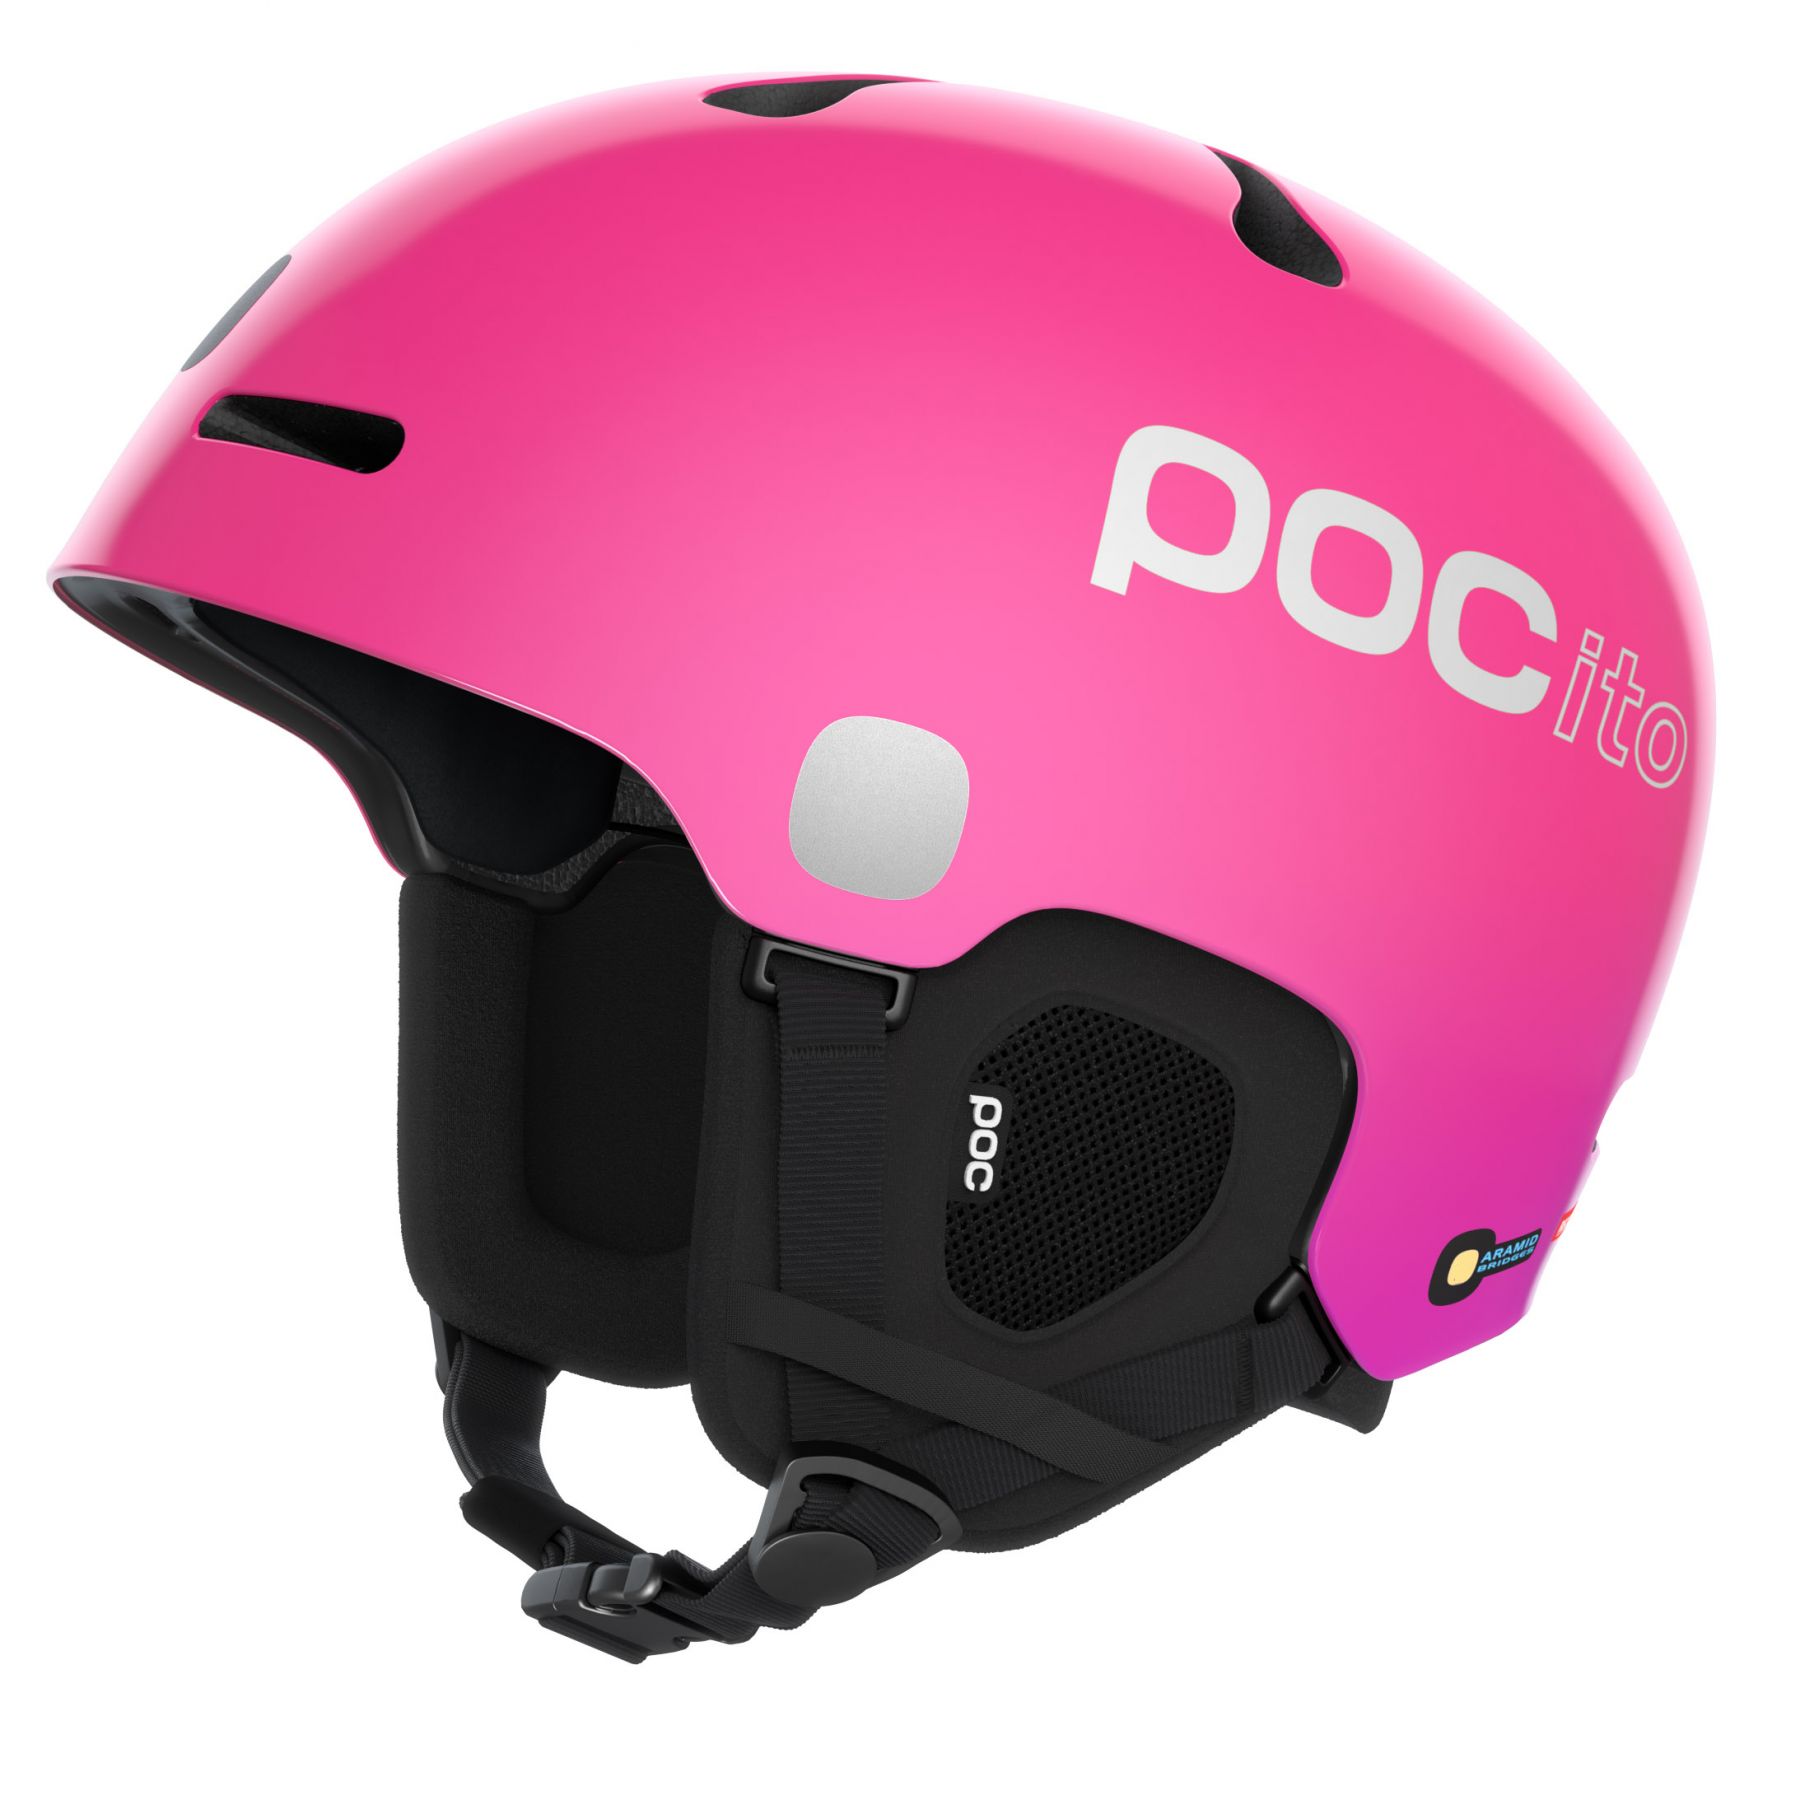 Brug POCito Fornix MIPS, skihjelm, junior, flourescent pink til en forbedret oplevelse